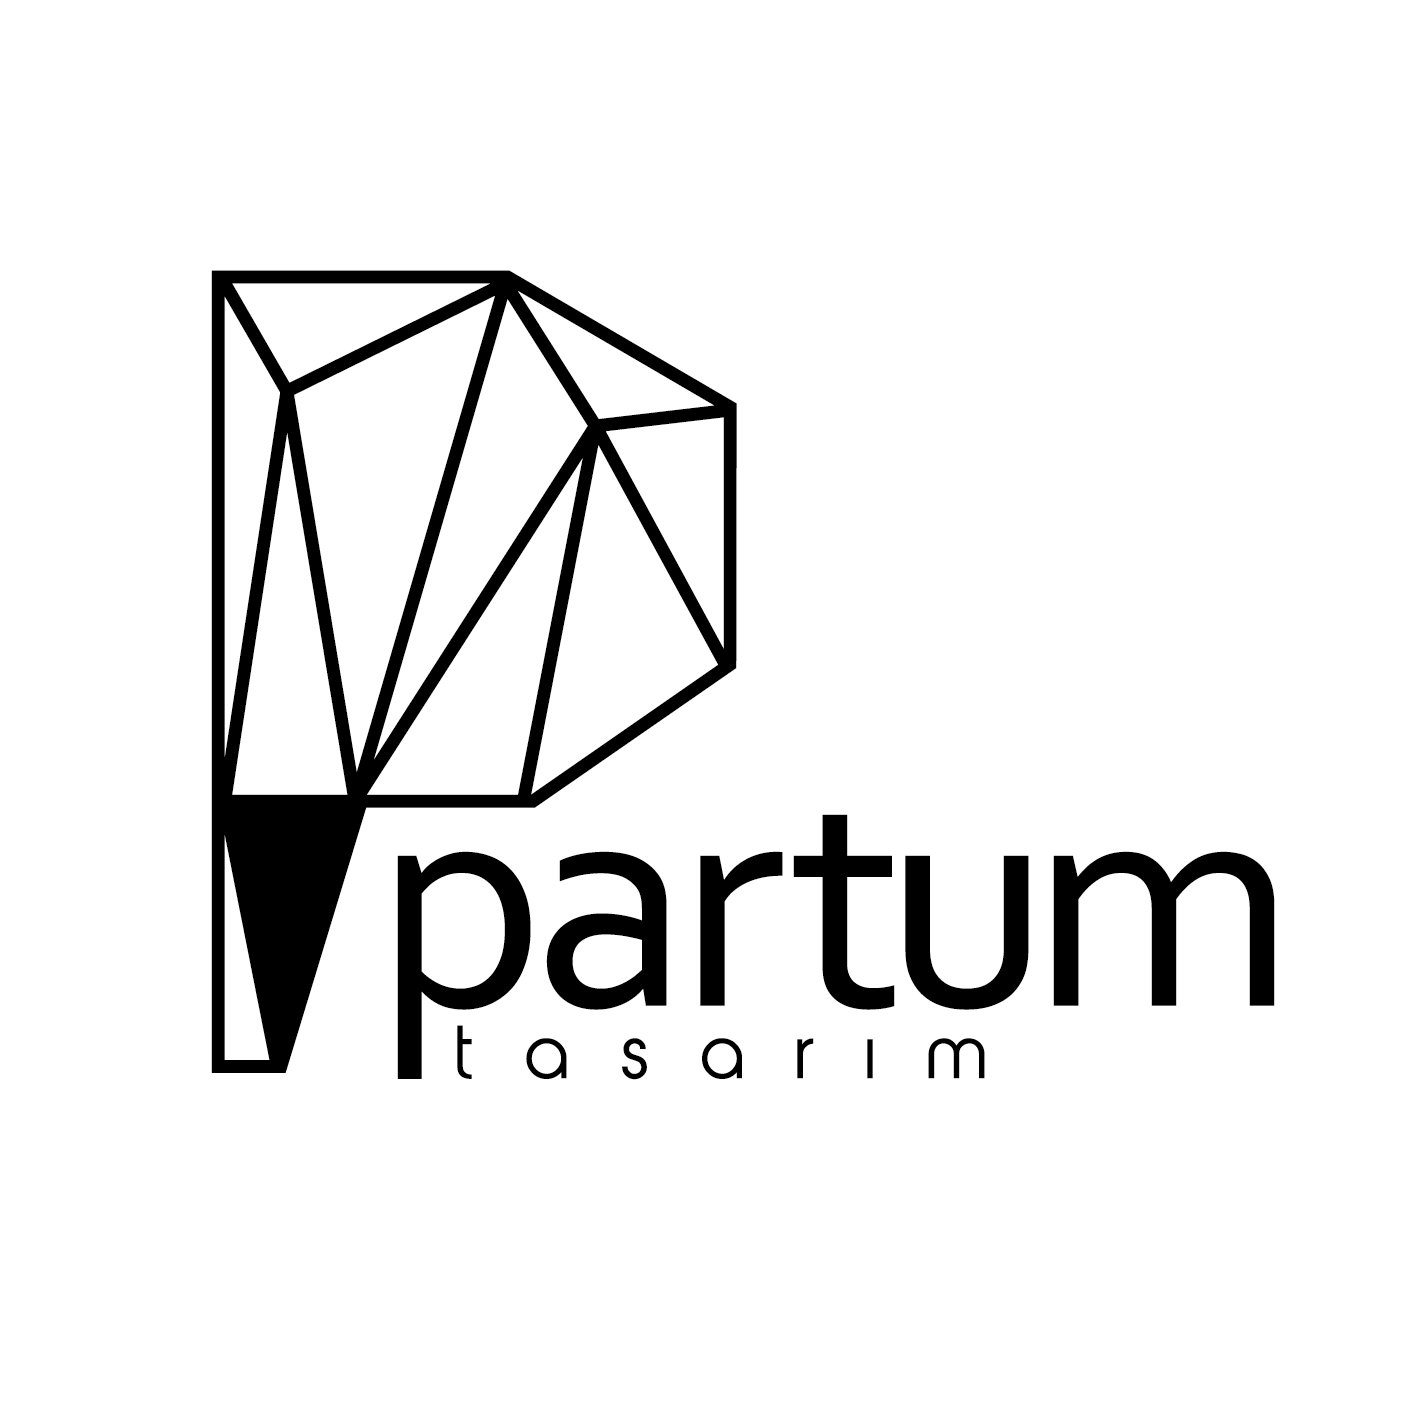 Artı Sanat ve Tasarım Atölyesi olarak 2010 da faaliyete başlanmış olup 2017 yılında Partum Tasarım ismi ile devam eden bir tasarım firmasıdır.